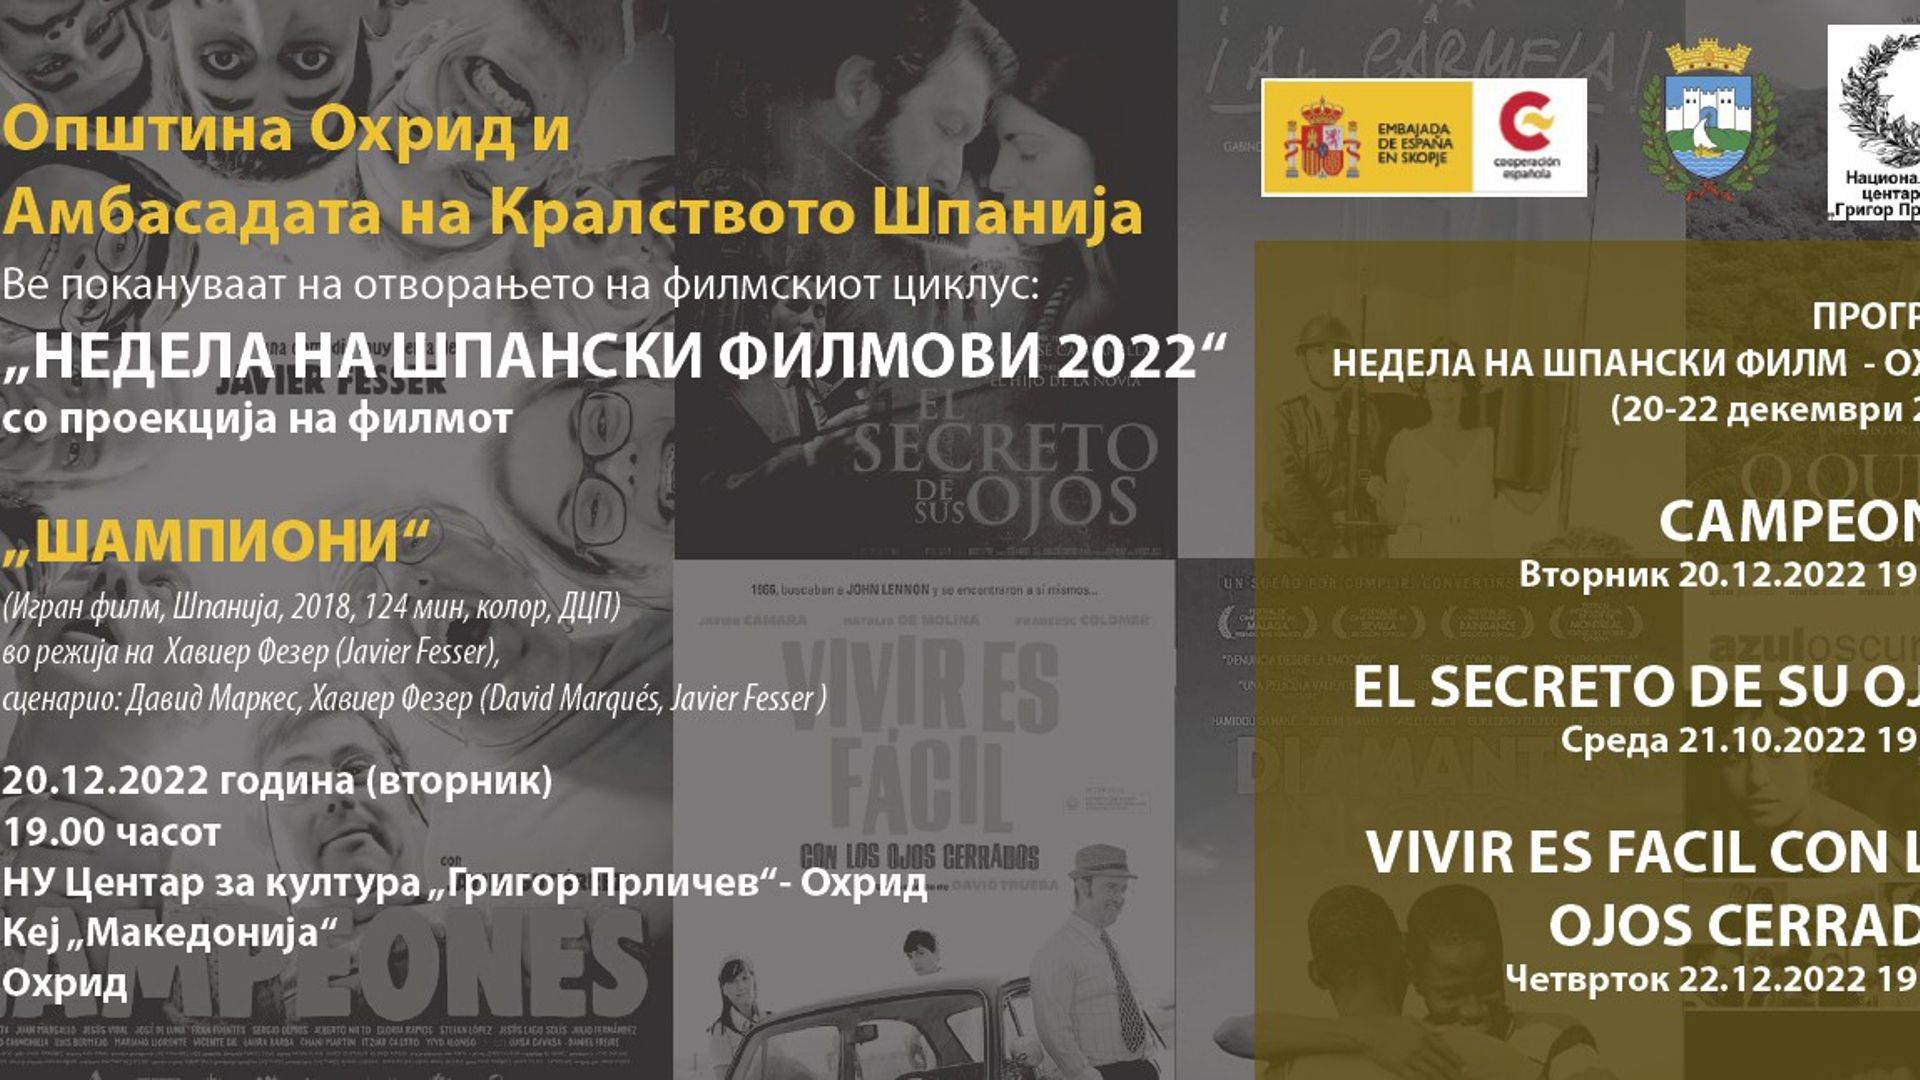 Недела на шпански филм во Охрид